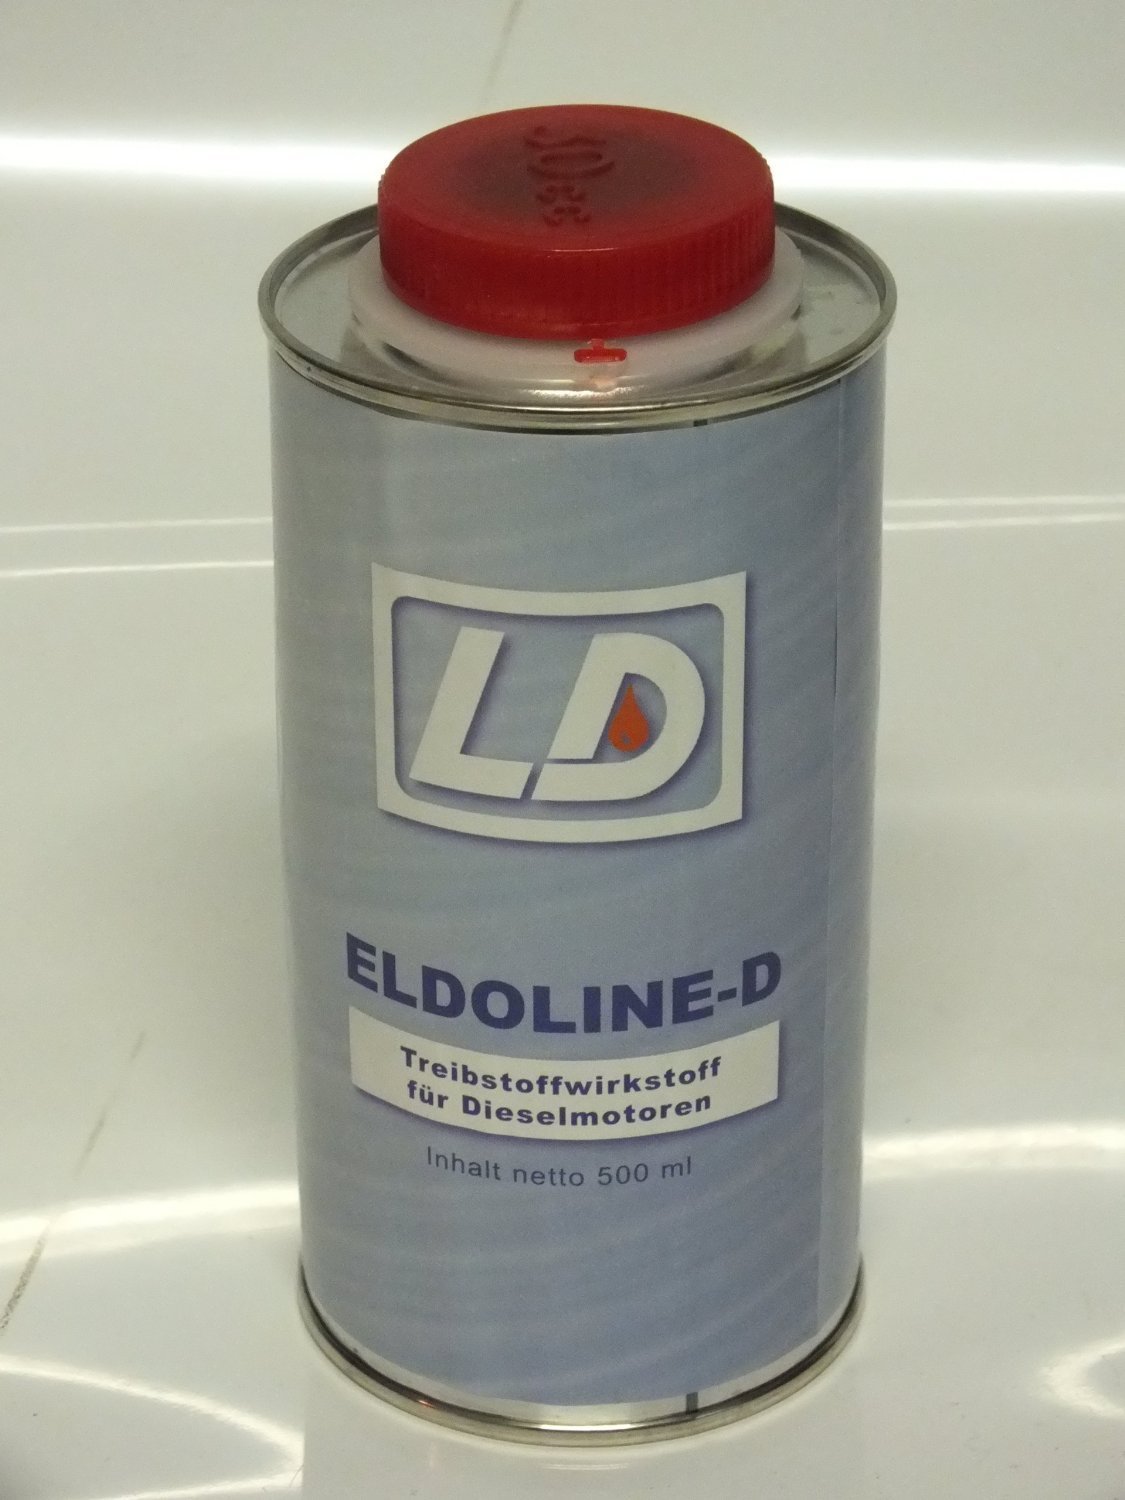 LD Eldoline-D Dieselzusatz Additiv 500ml (3) von LD Lubricating Dutchman GmbH